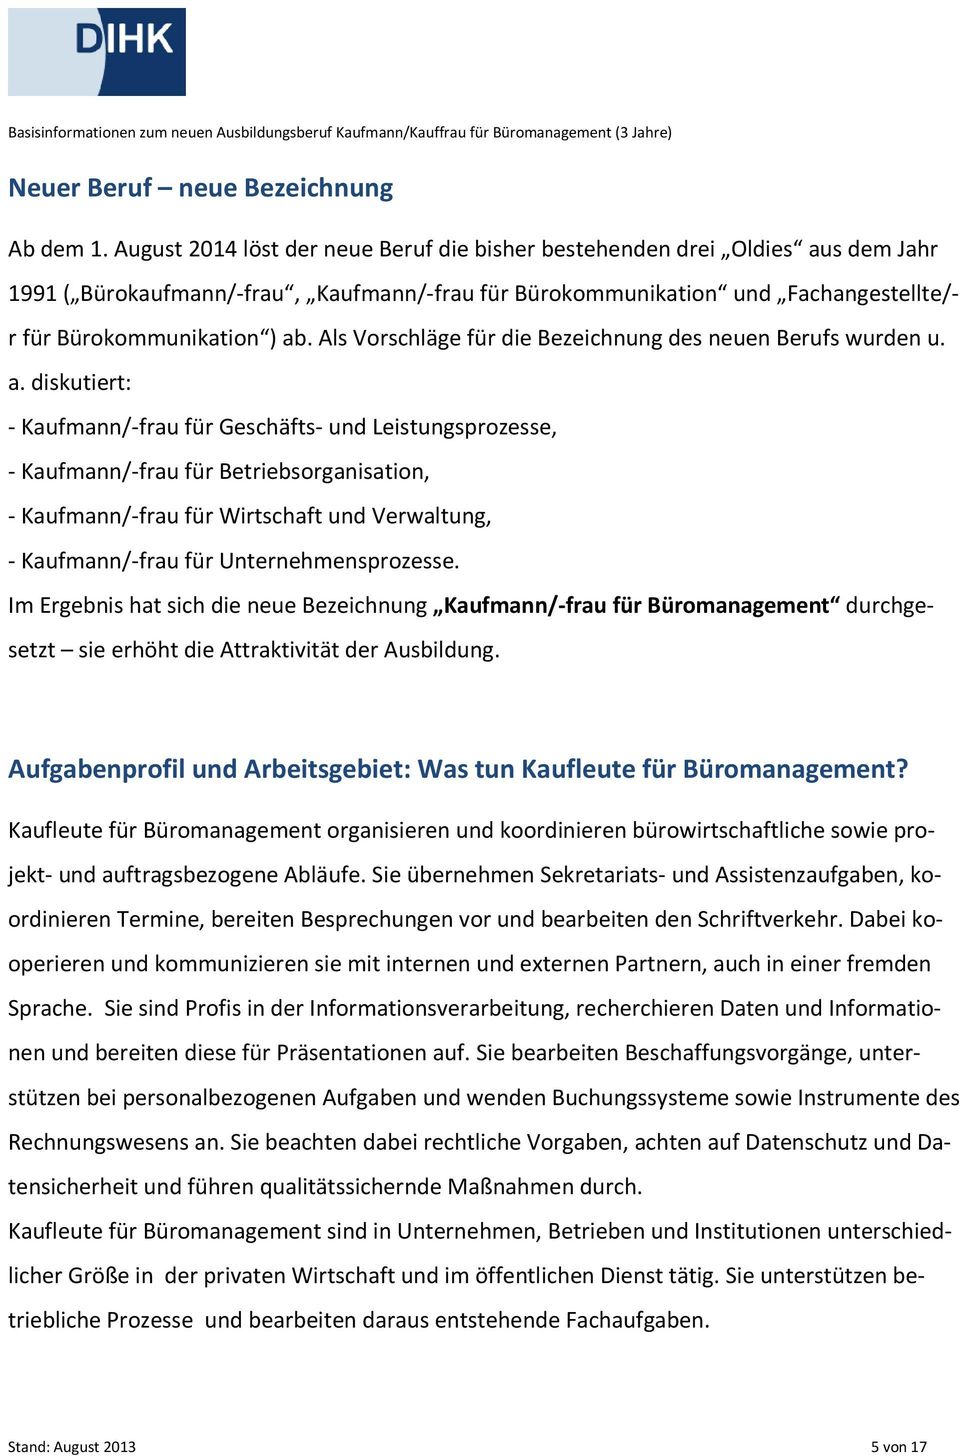 Kaufmann Kauffrau Fur Buromanagement Pdf Kostenfreier Download